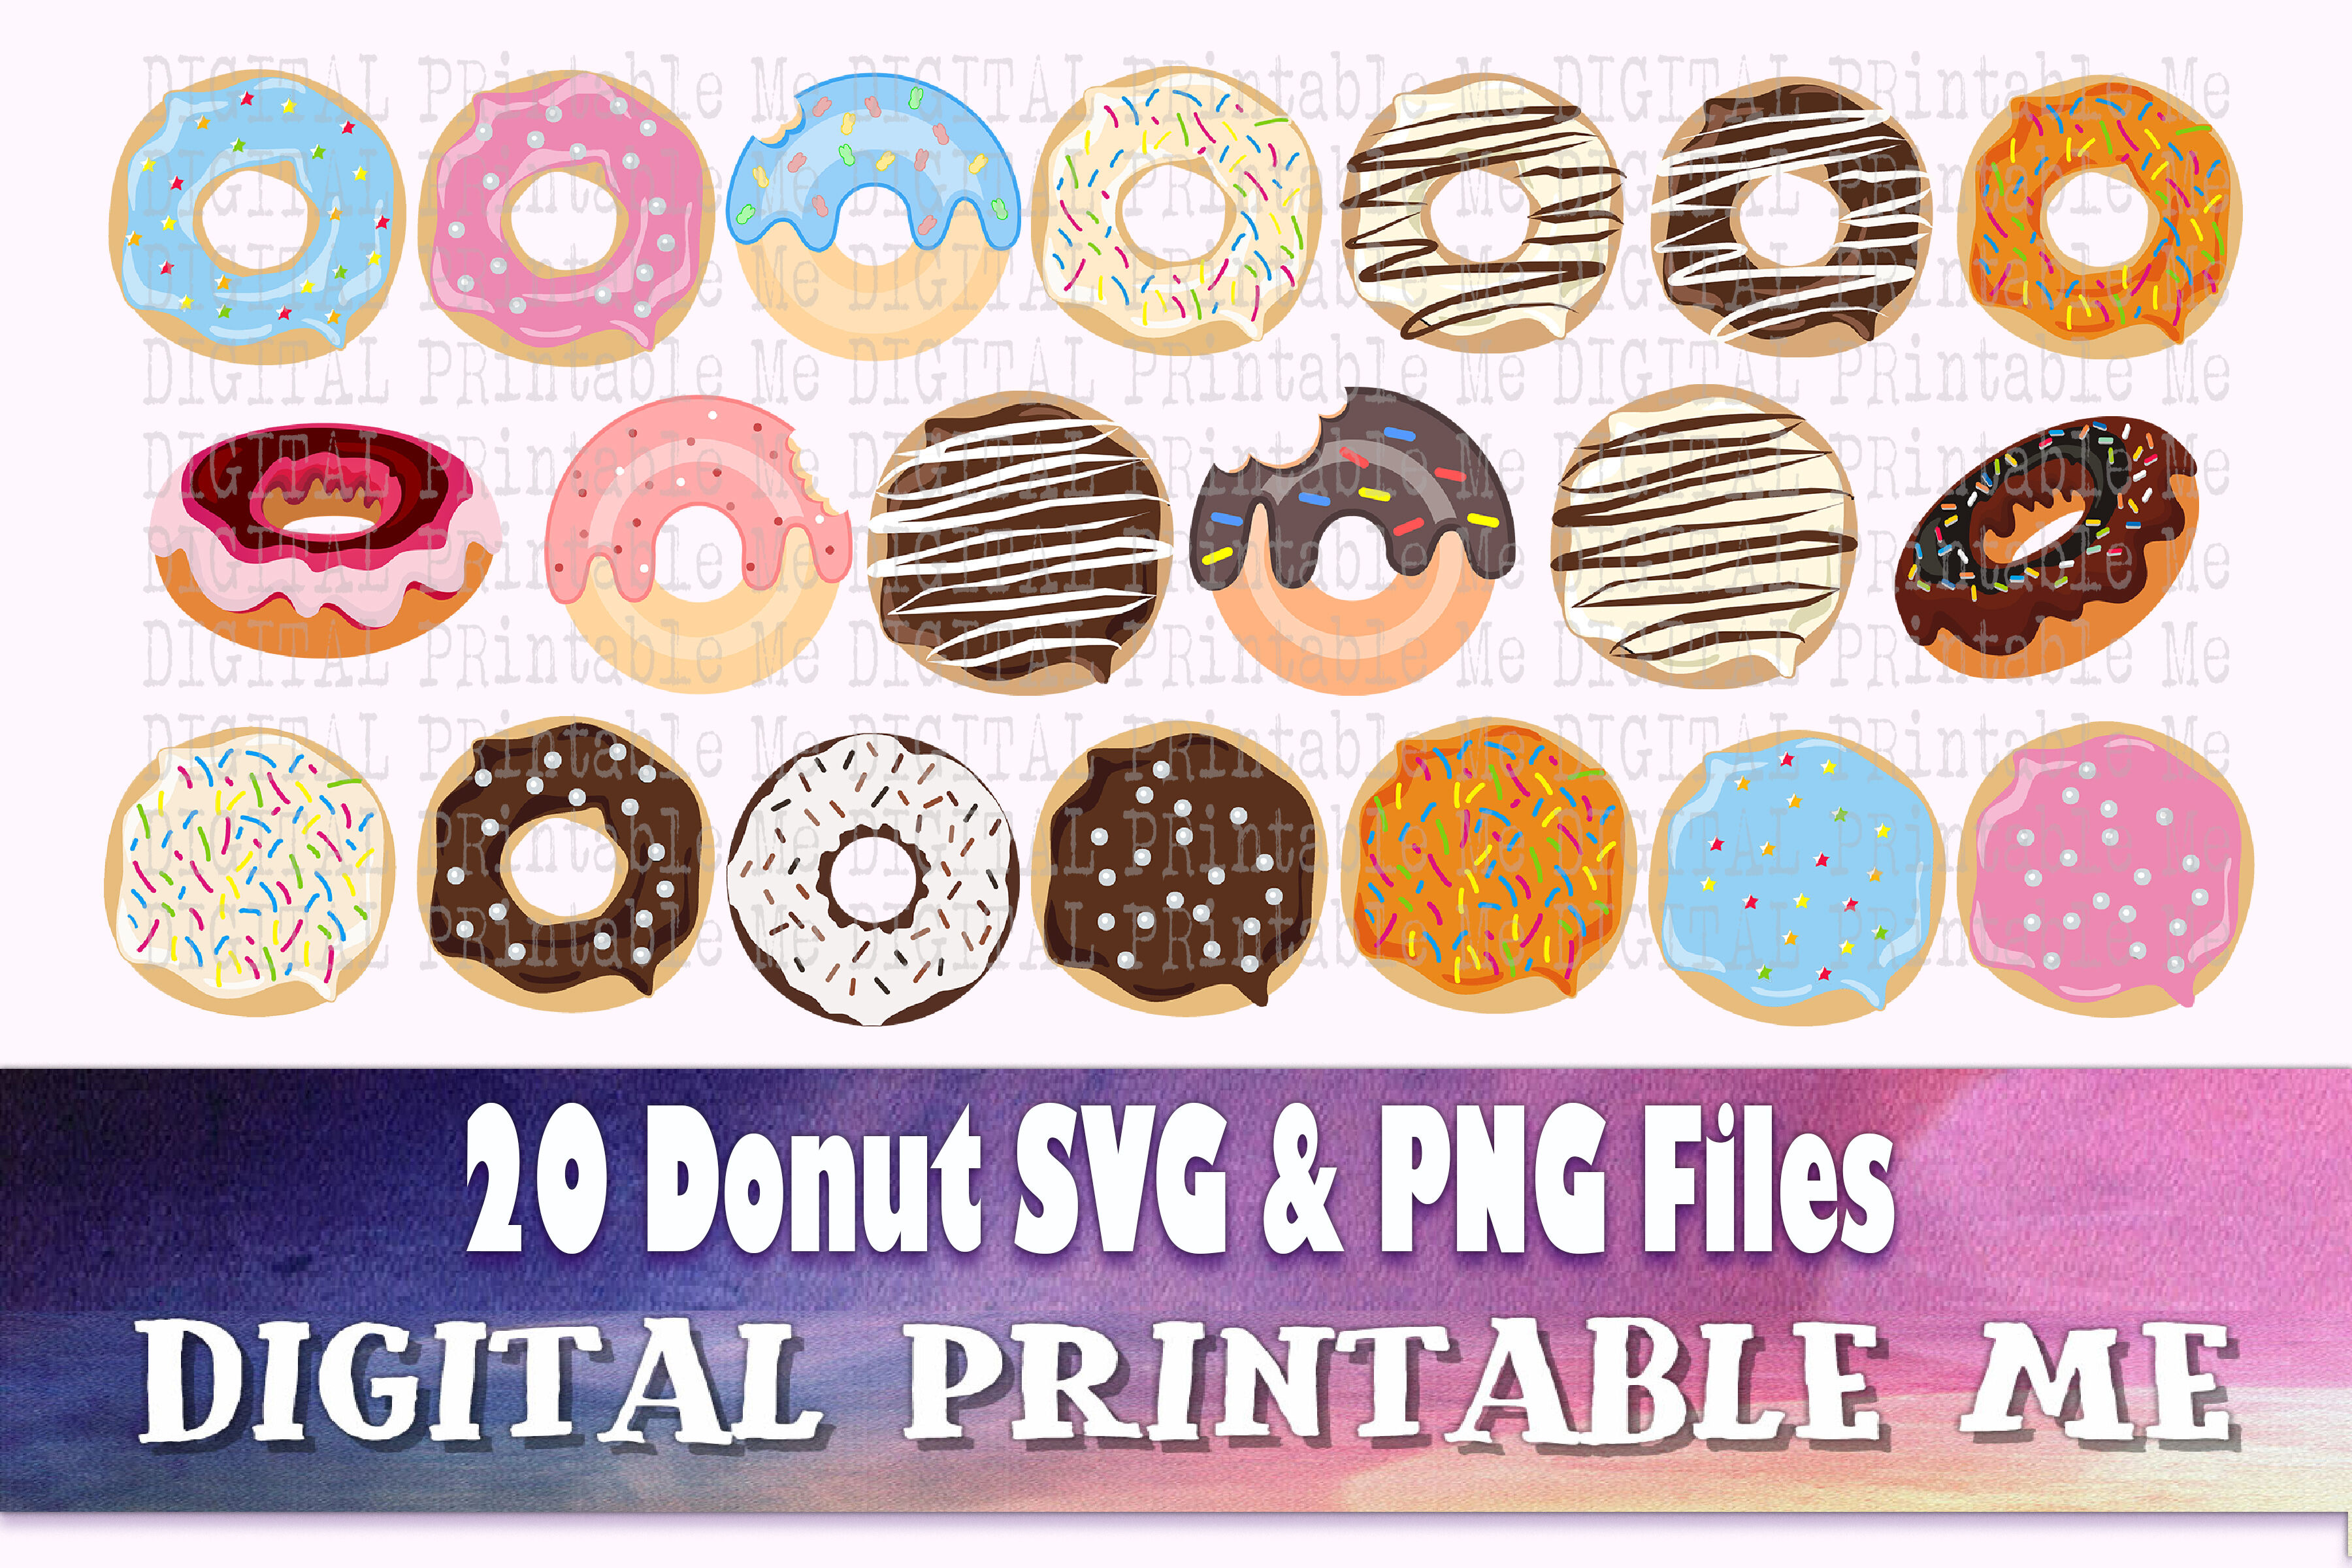 Download Doughnut Donut SVG bundle, Clip art, PNG, 20 image pack ...